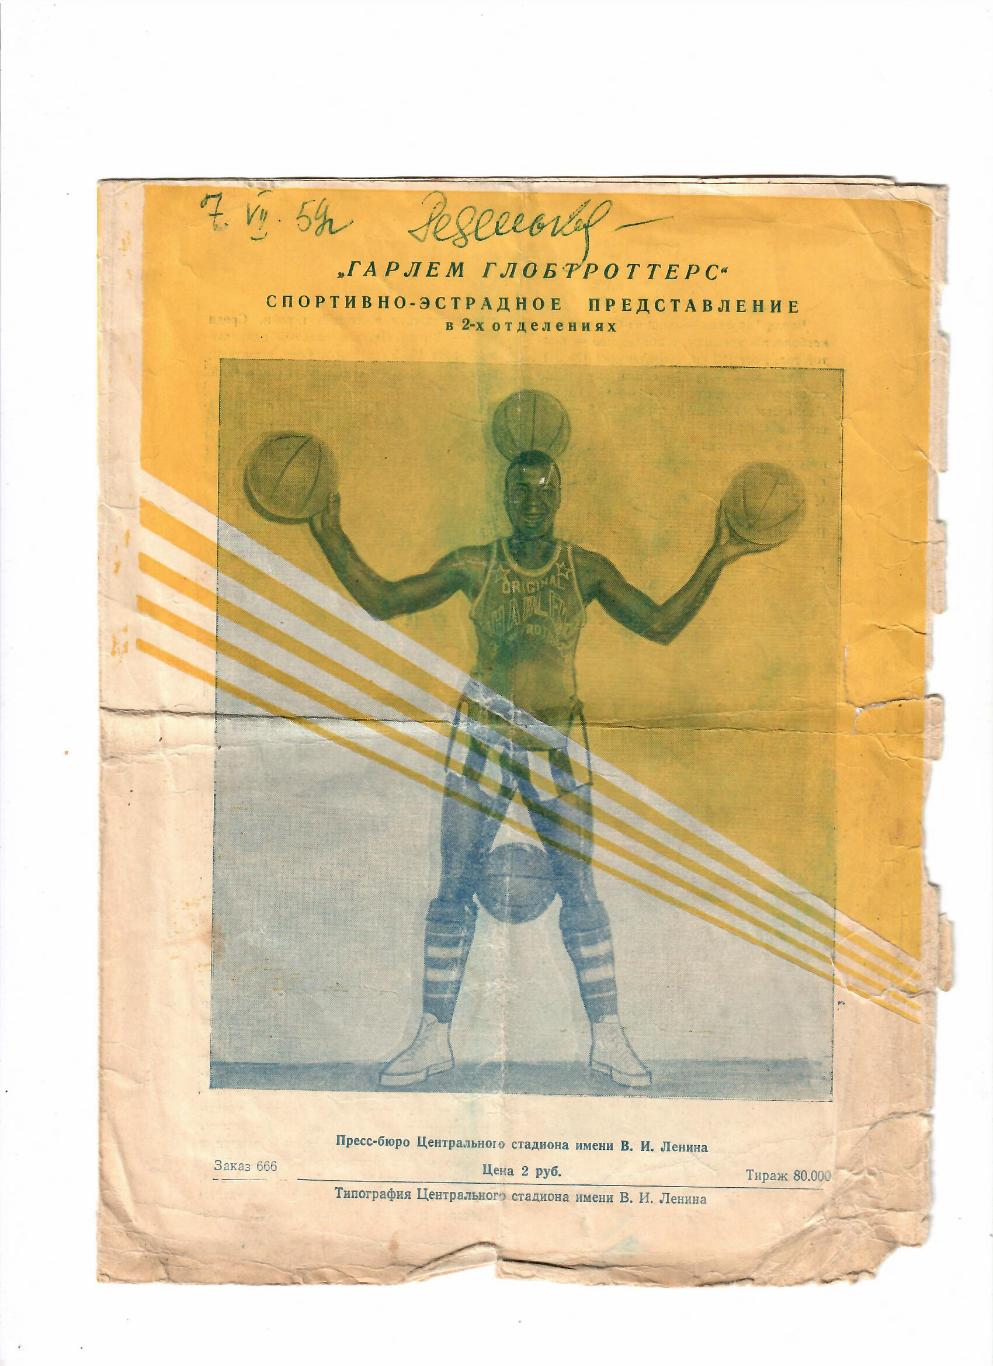 Гарлем Глобтроттерс 6-12 июля 1959 спортивно-эстрадное представление 1